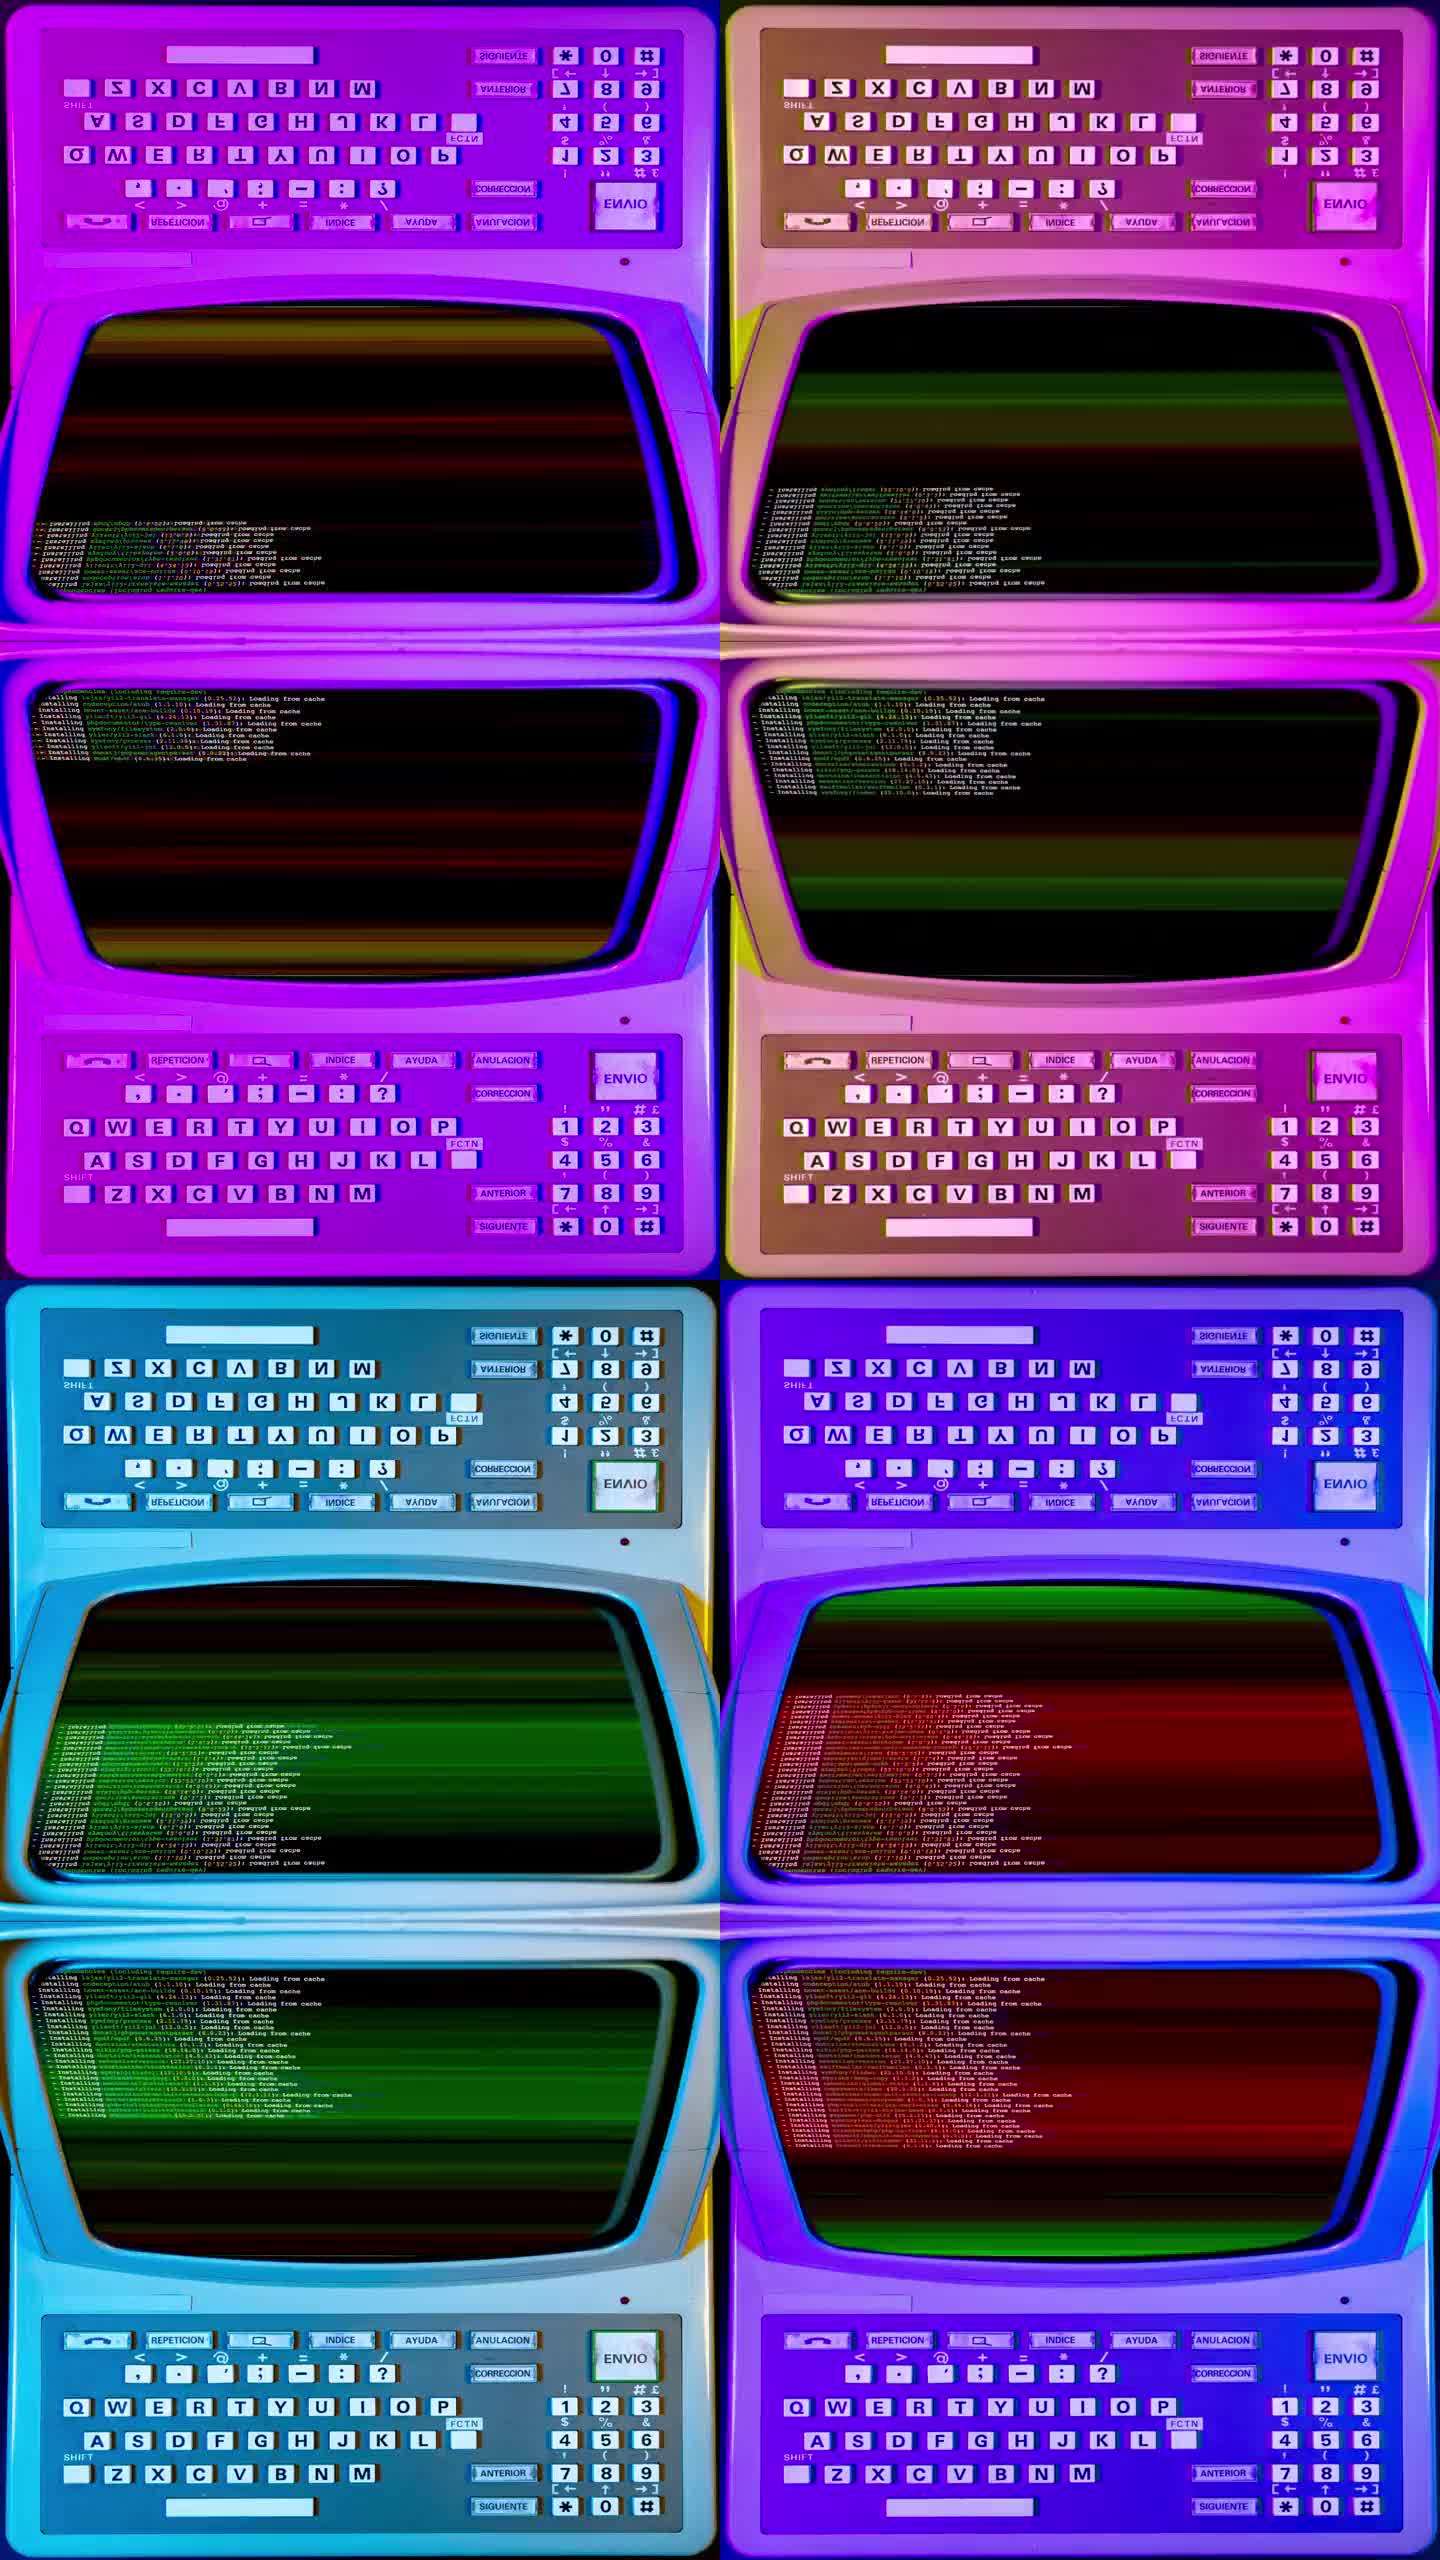 彩色灯光的电脑键盘